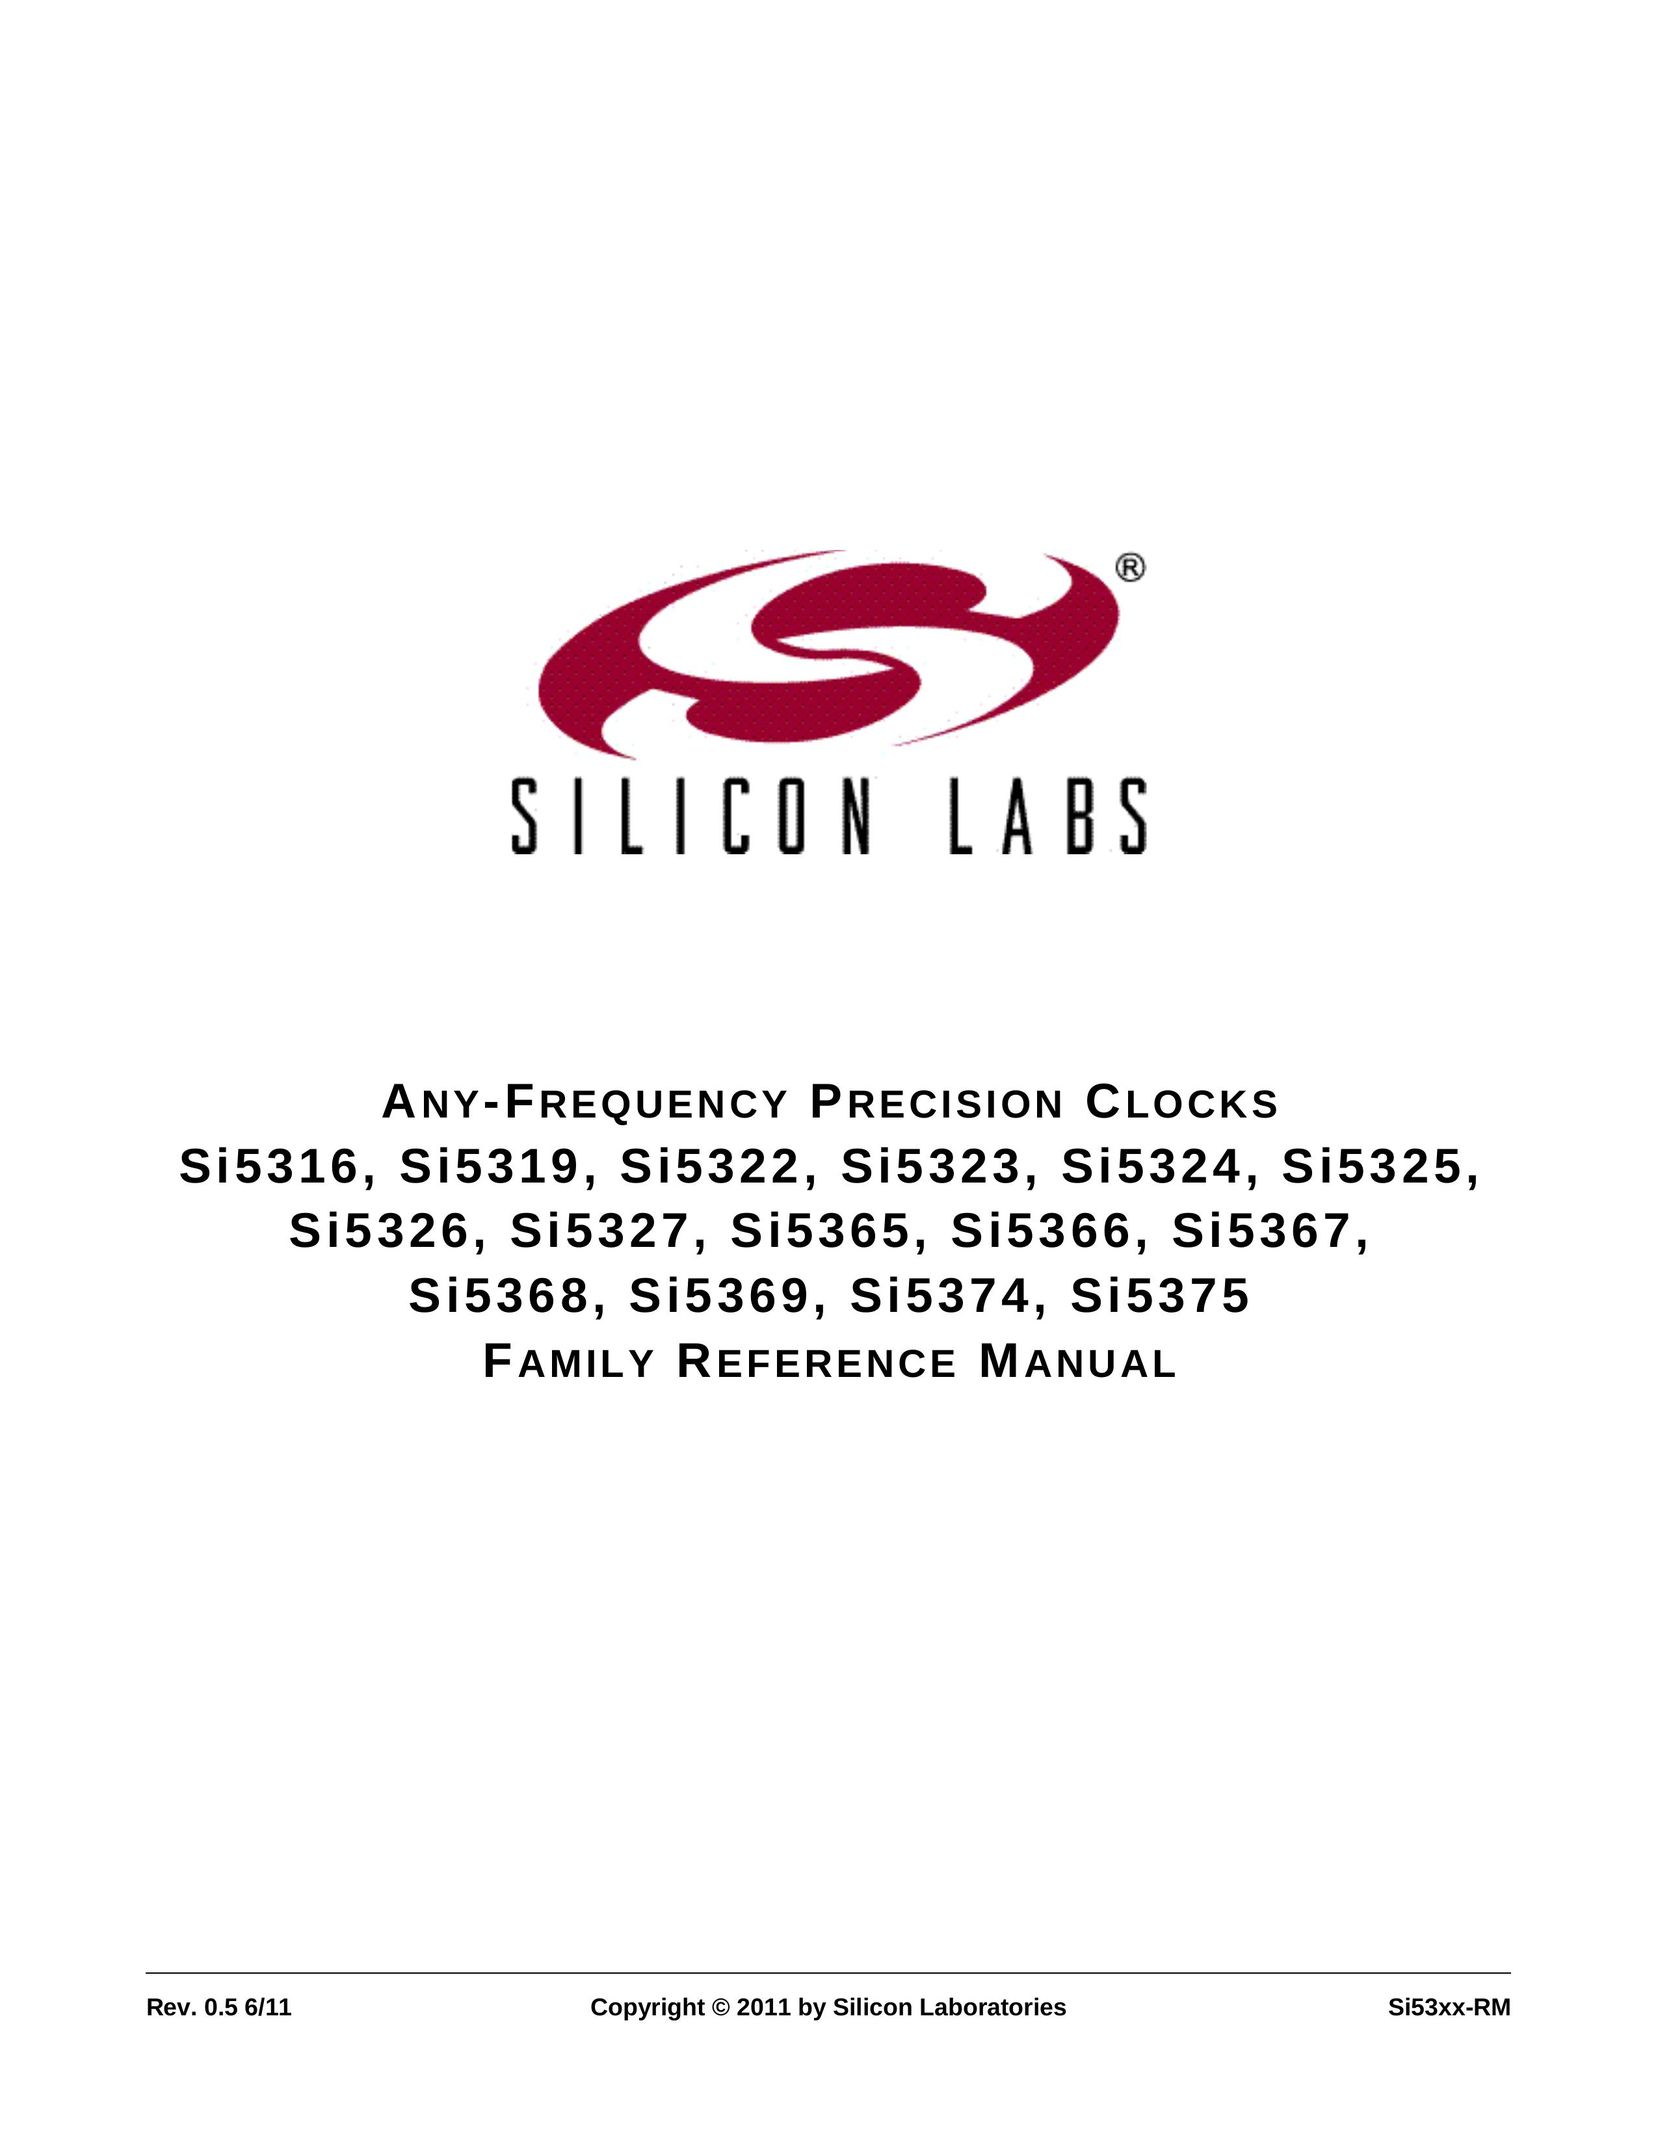 Silicon Laboratories SI5327 Clock User Manual